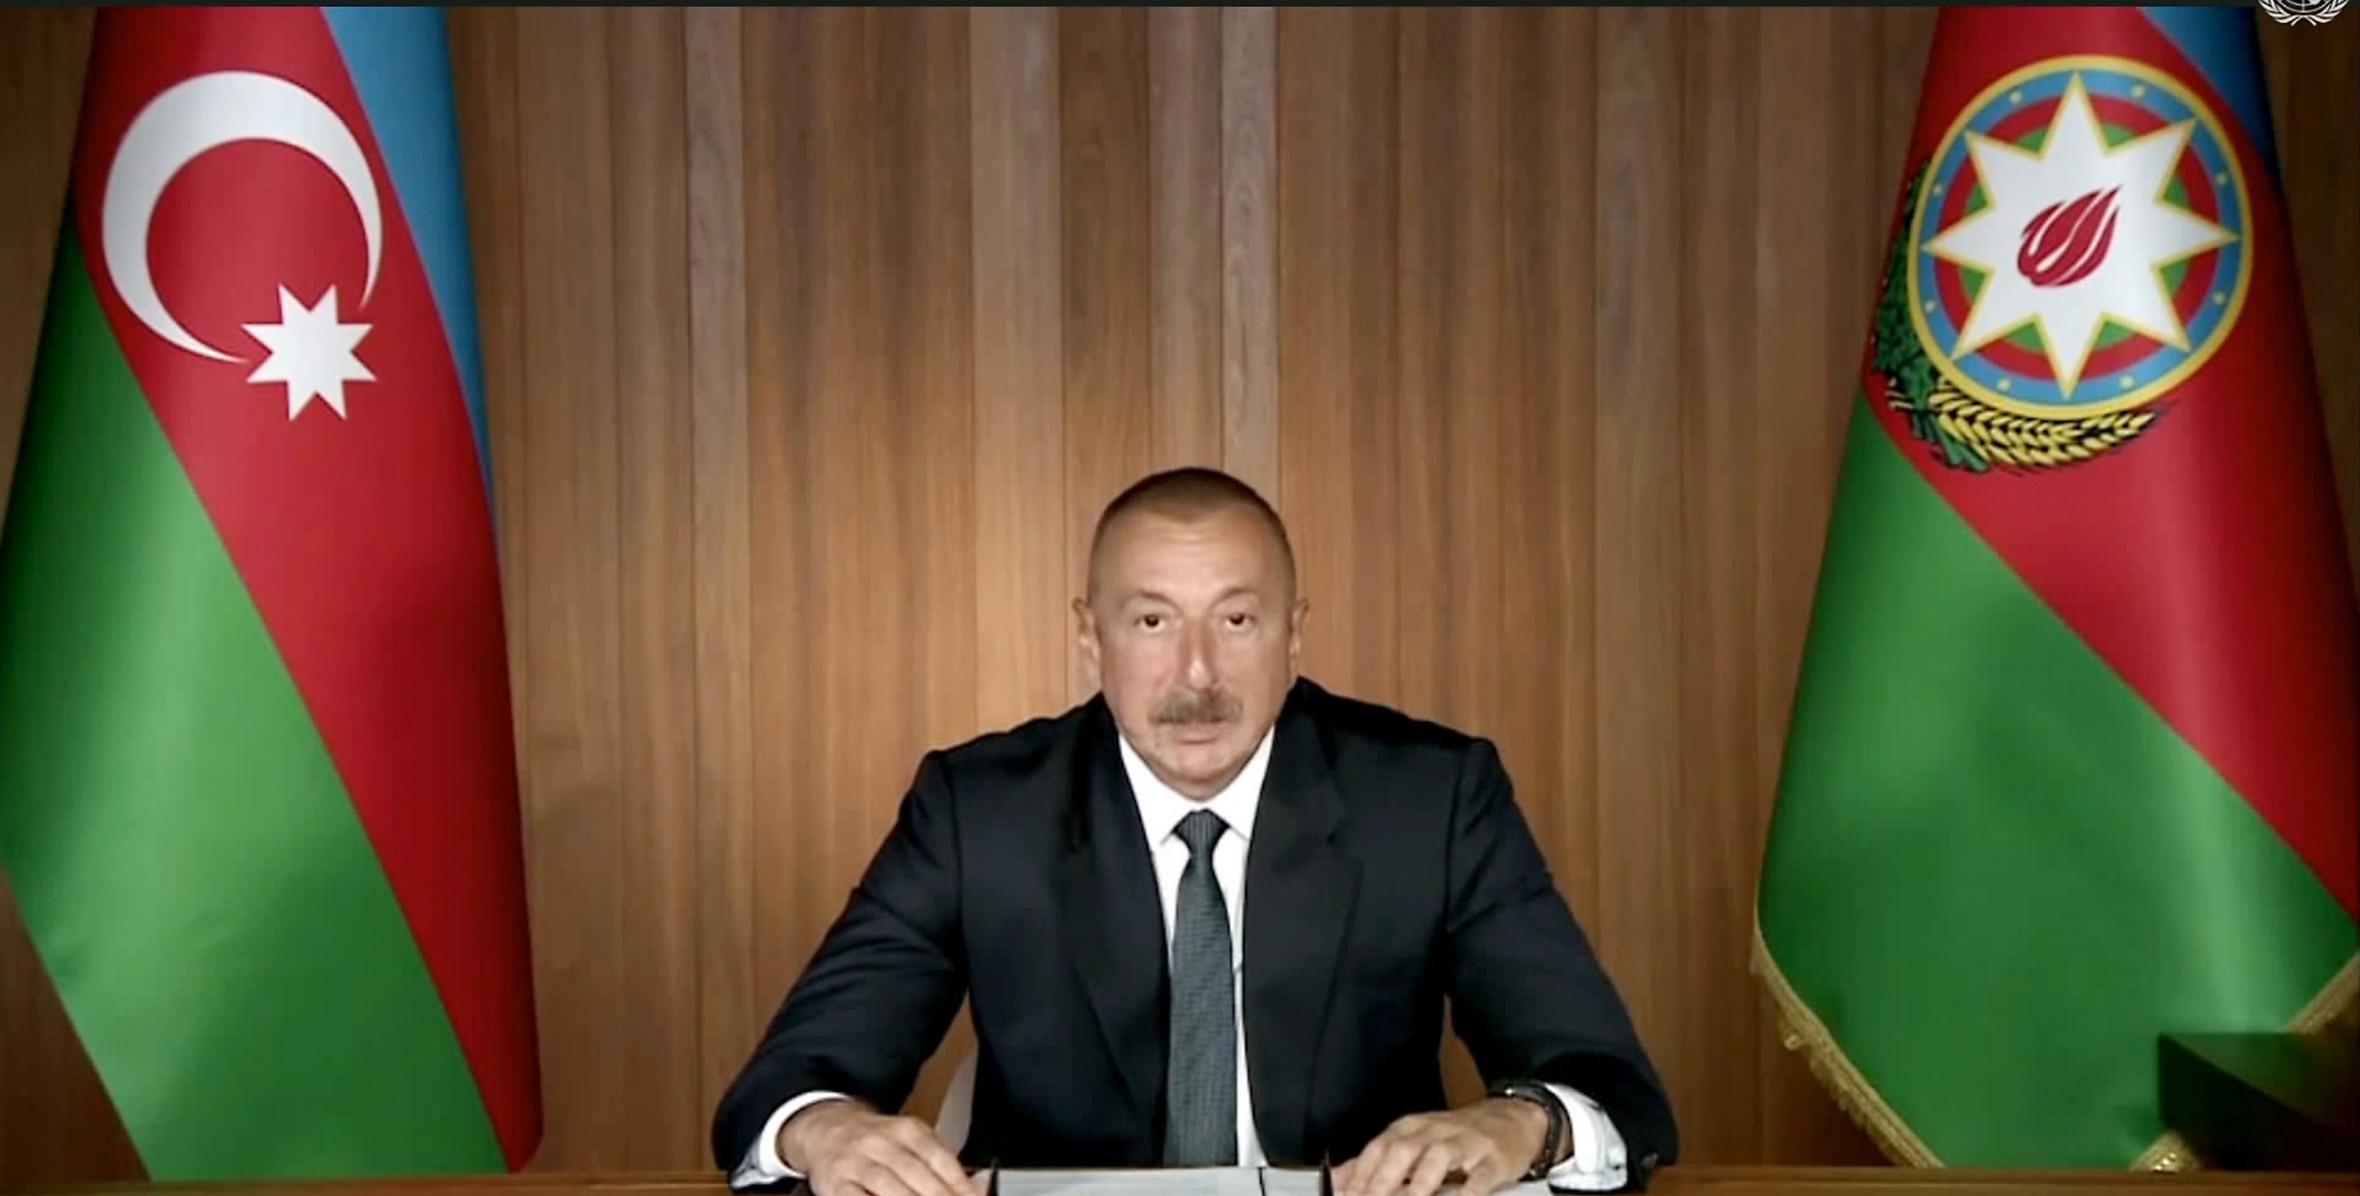 Ильхам Алиев выступил на общих дебатах в видеоформате 75-й сессии Генеральной Ассамблеи ООН